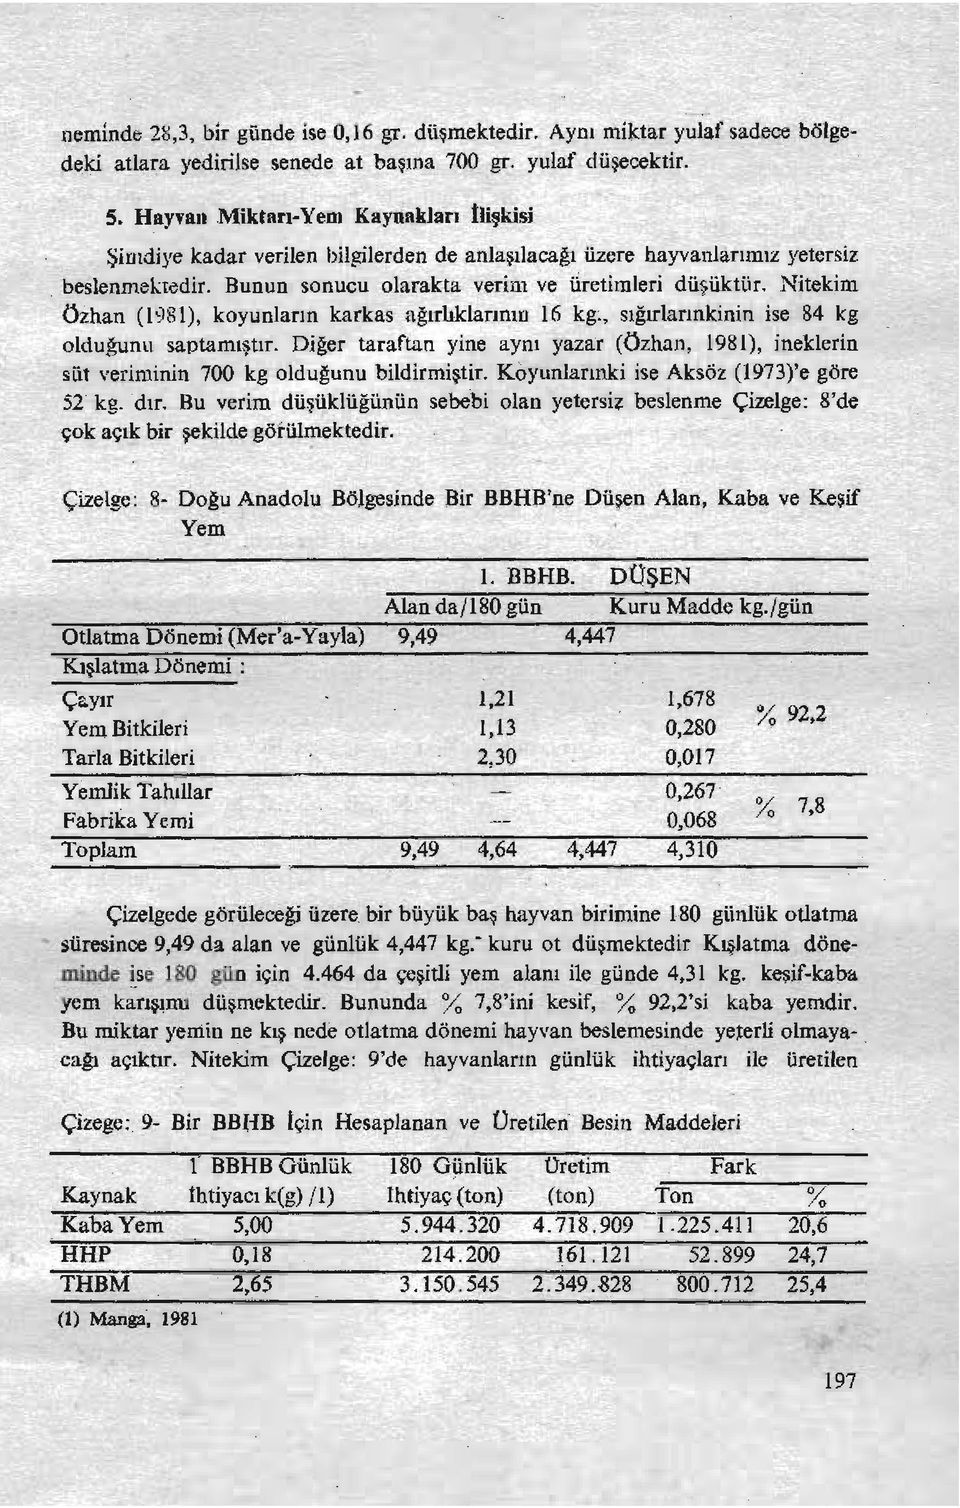 Nitekim Özhan (1981), koyunların karkas ağırlıklarının 16 kg~, sığırlarmkinin ise 84 kg oldugunu saptamıştır.